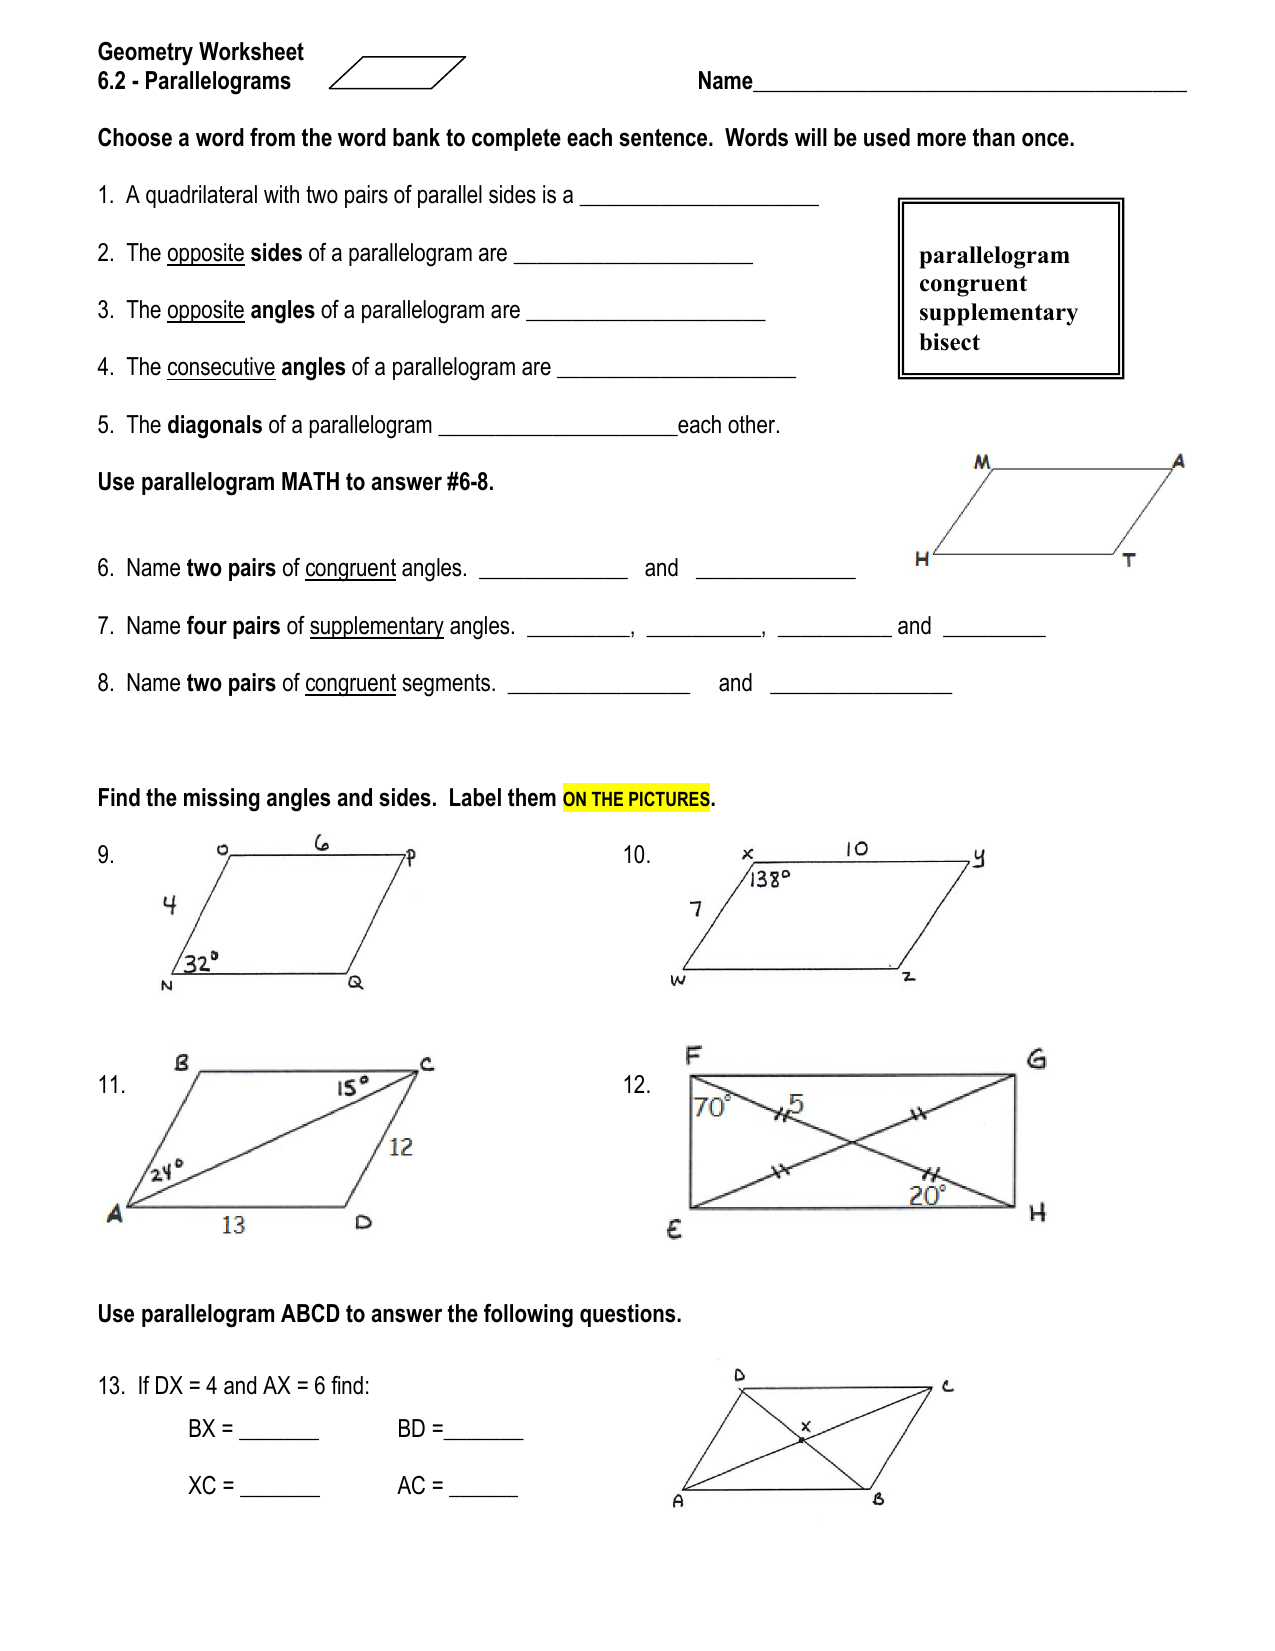 9th-grade-geometry-worksheet-640337-free-worksheets-samples